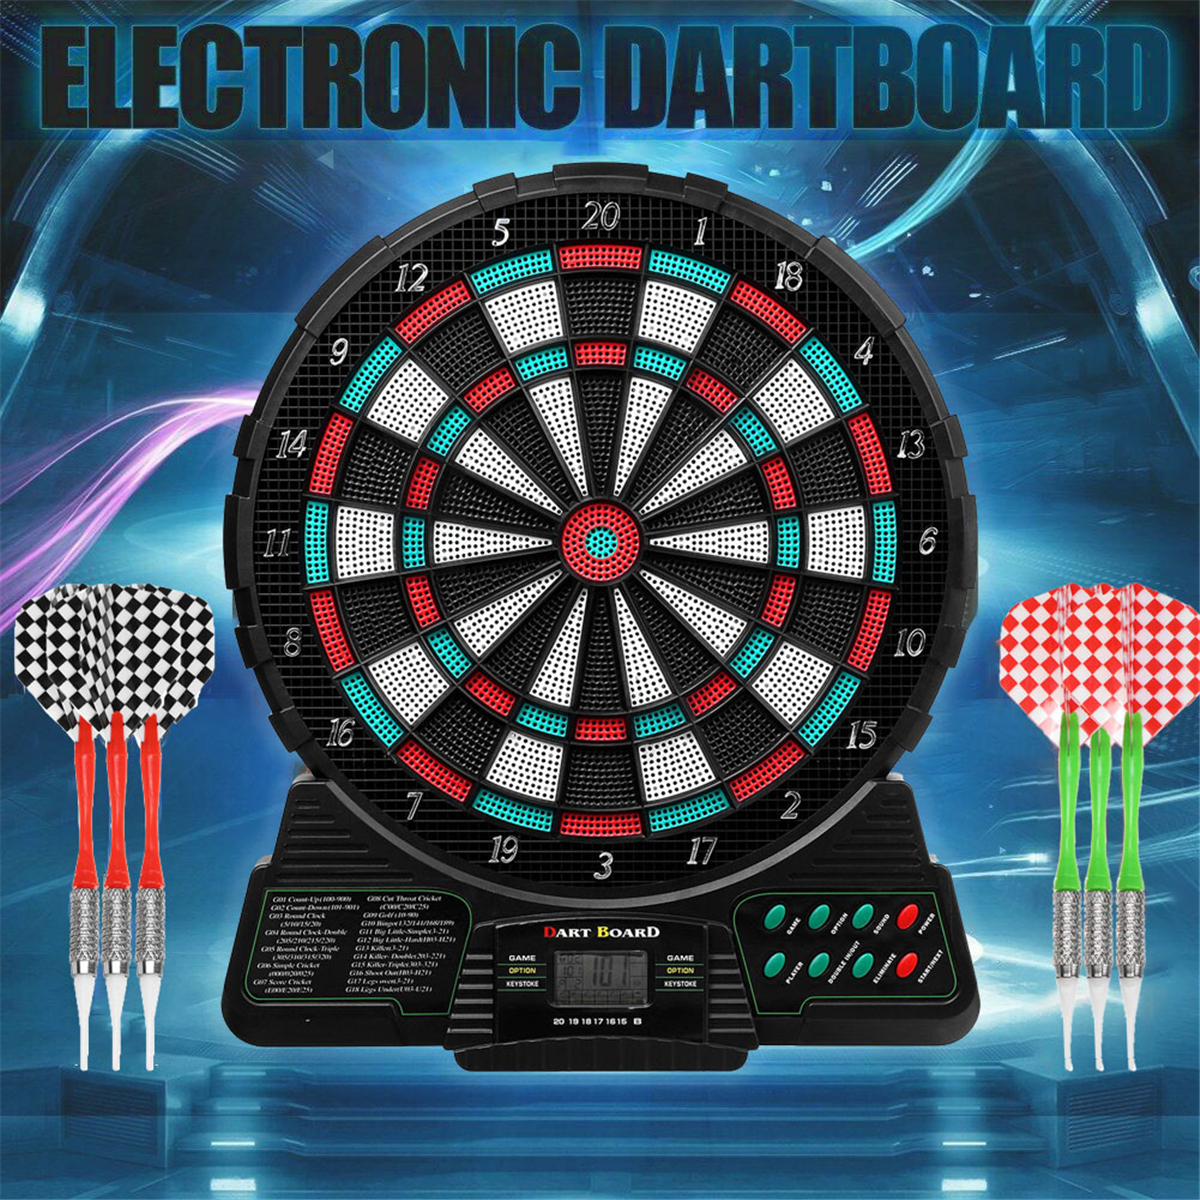 Profi 6 Pfeile Elektrische Dartscheibe Dartboard 159 Spiele Elektronisch Darts 